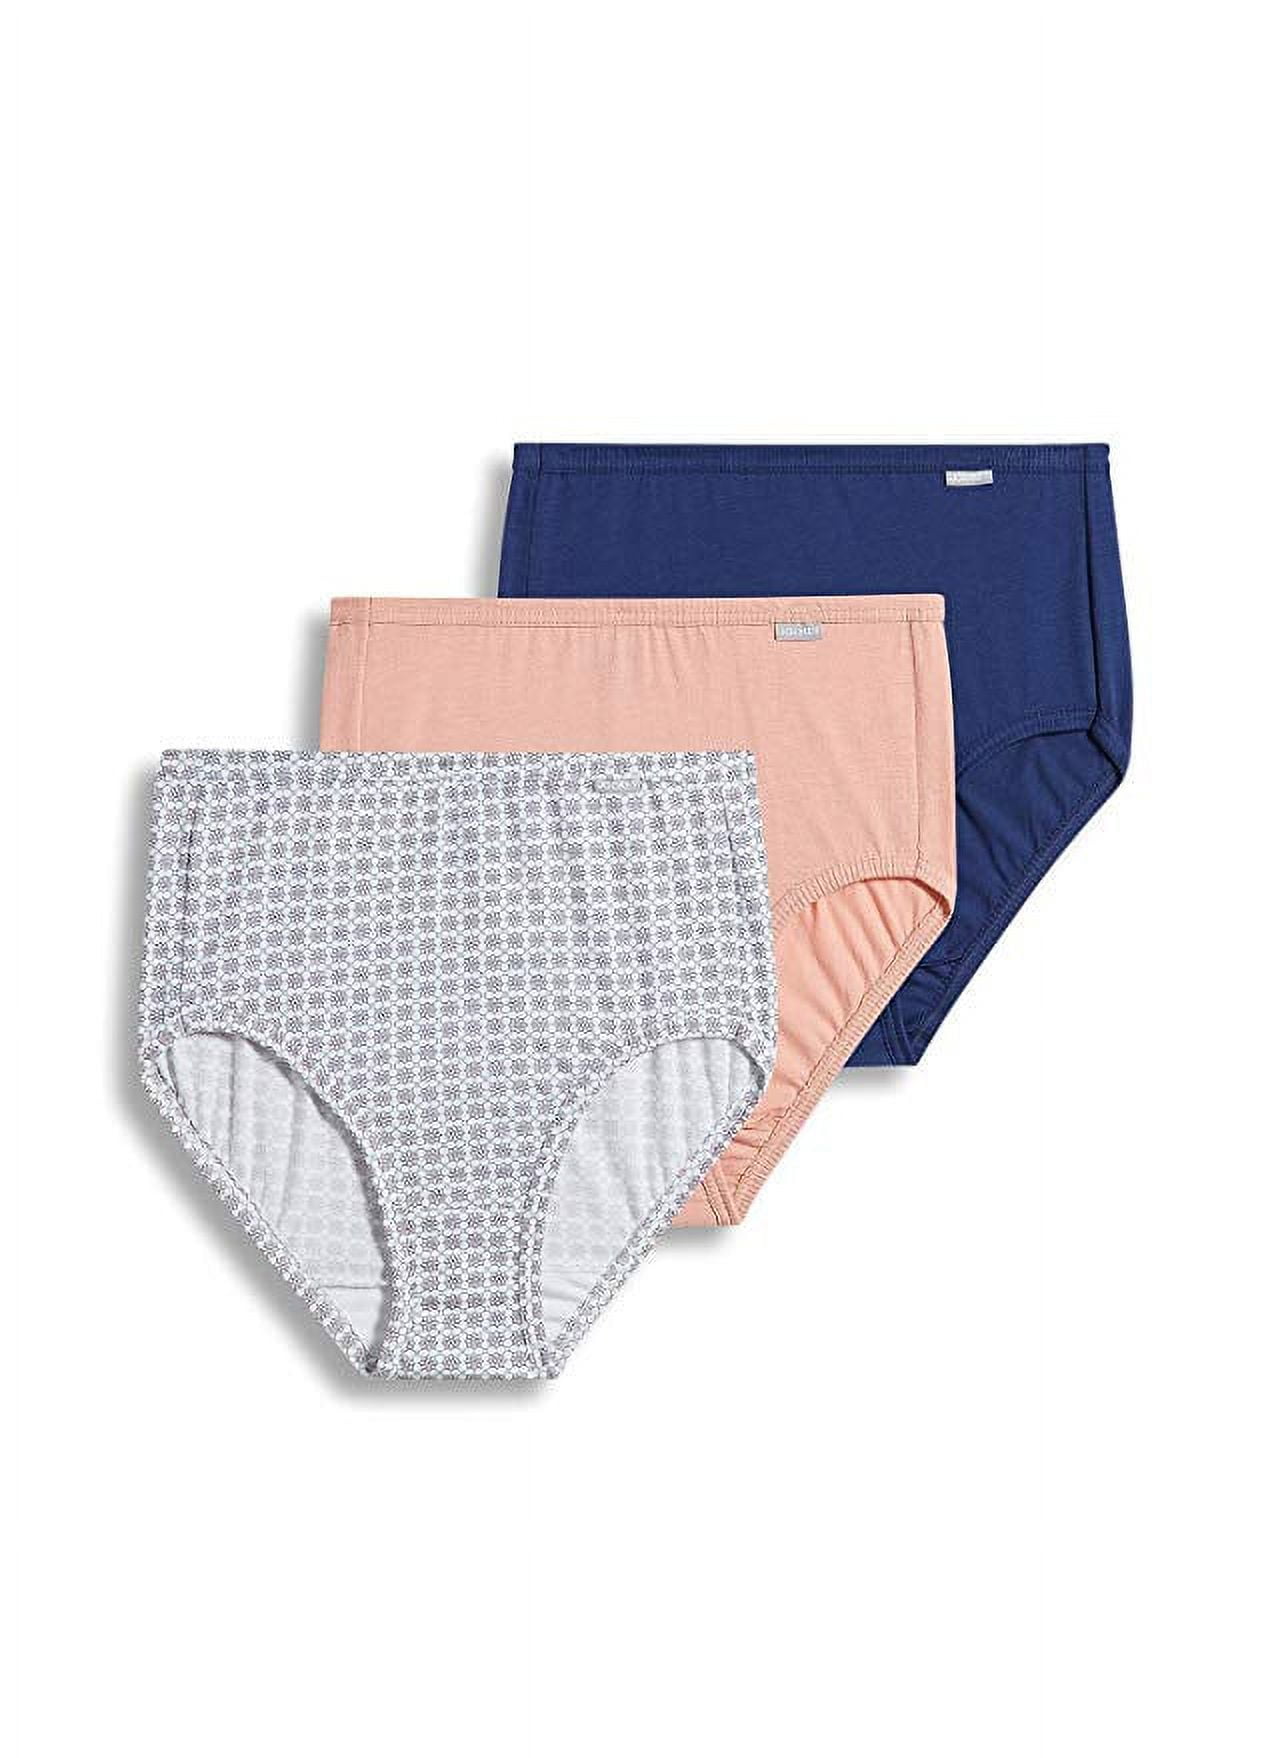 Jockey Women's Underwear Elance Brief - 3 Pack